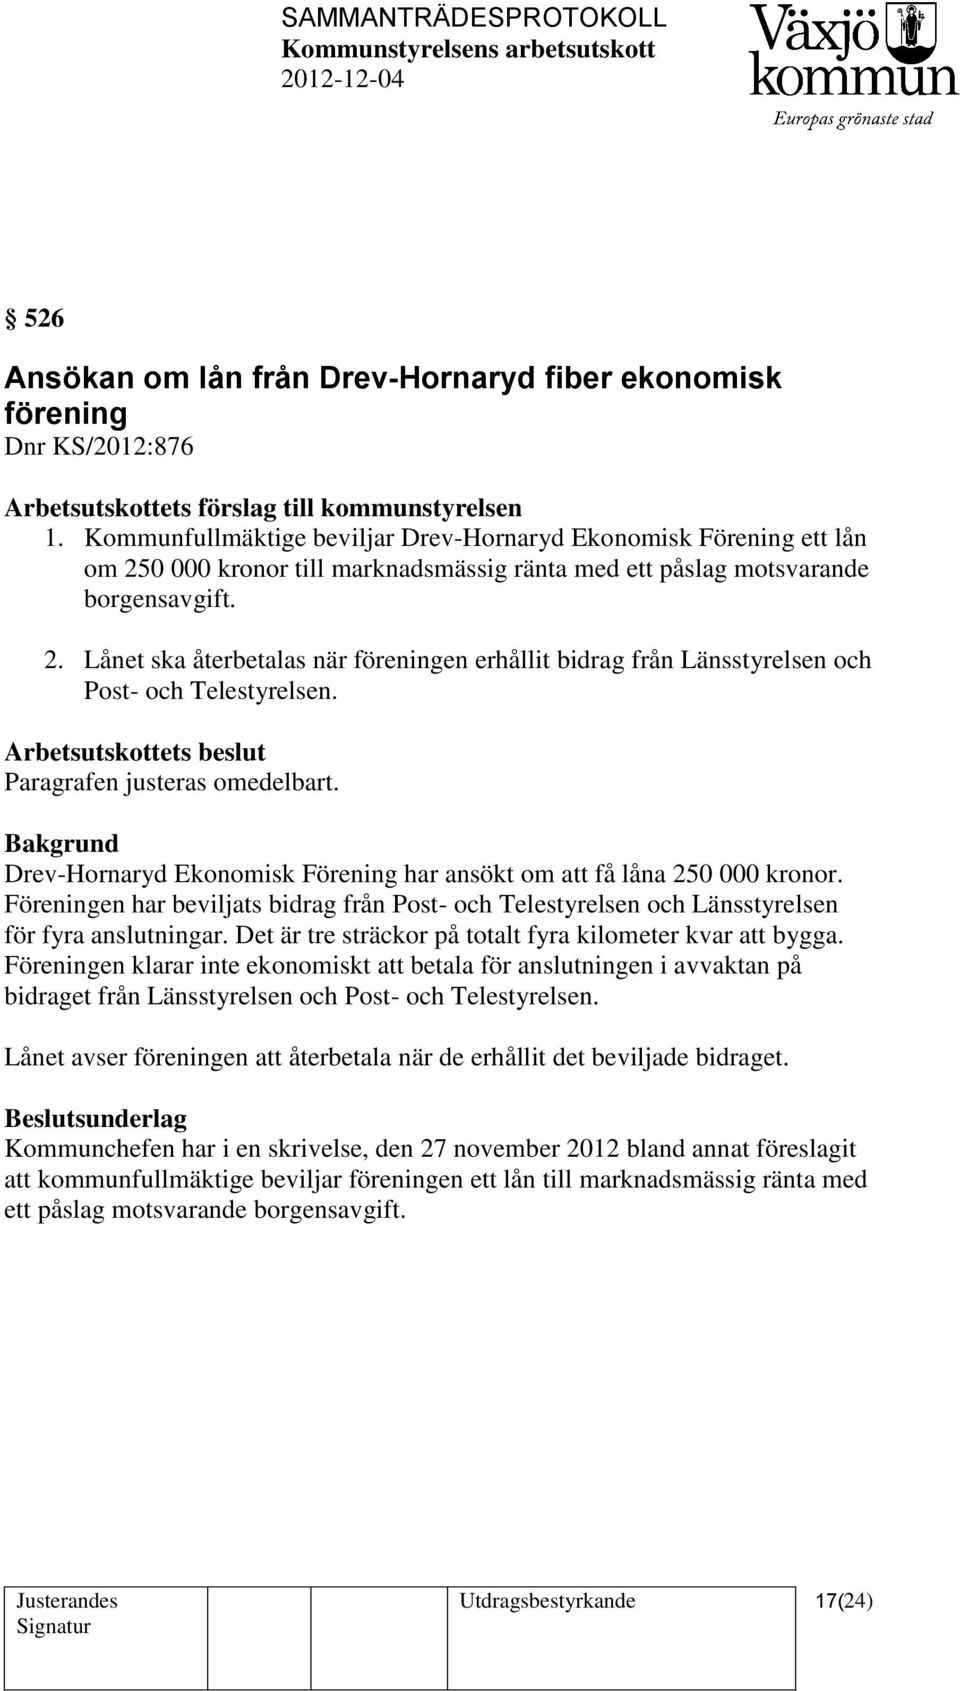 Arbetsutskottets beslut Paragrafen justeras omedelbart. Drev-Hornaryd Ekonomisk Förening har ansökt om att få låna 250 000 kronor.